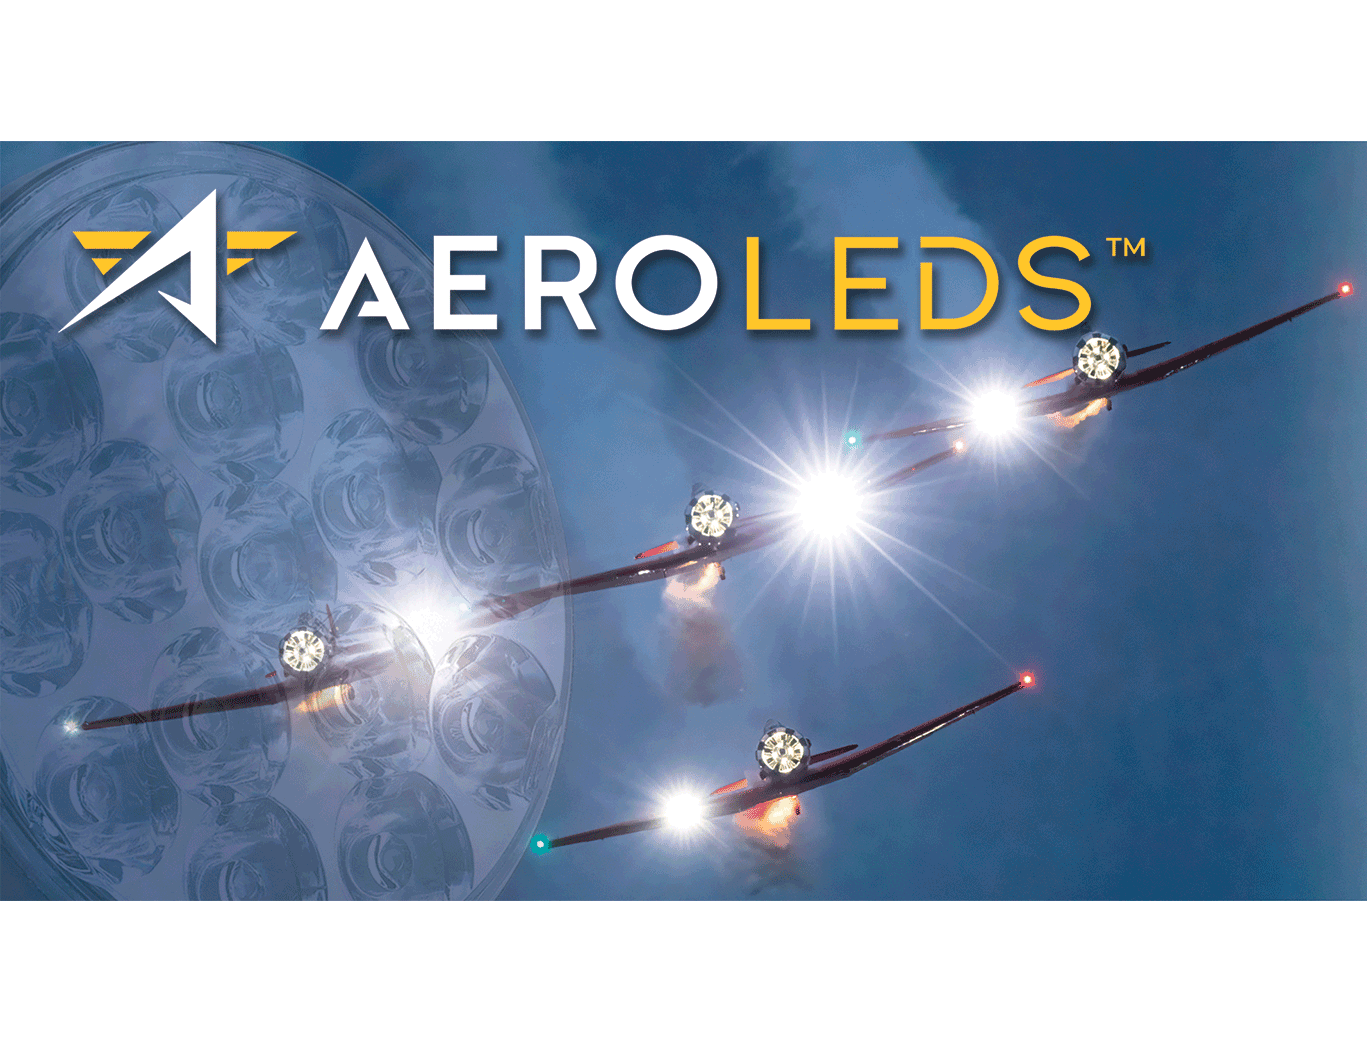 aeroleds promotion